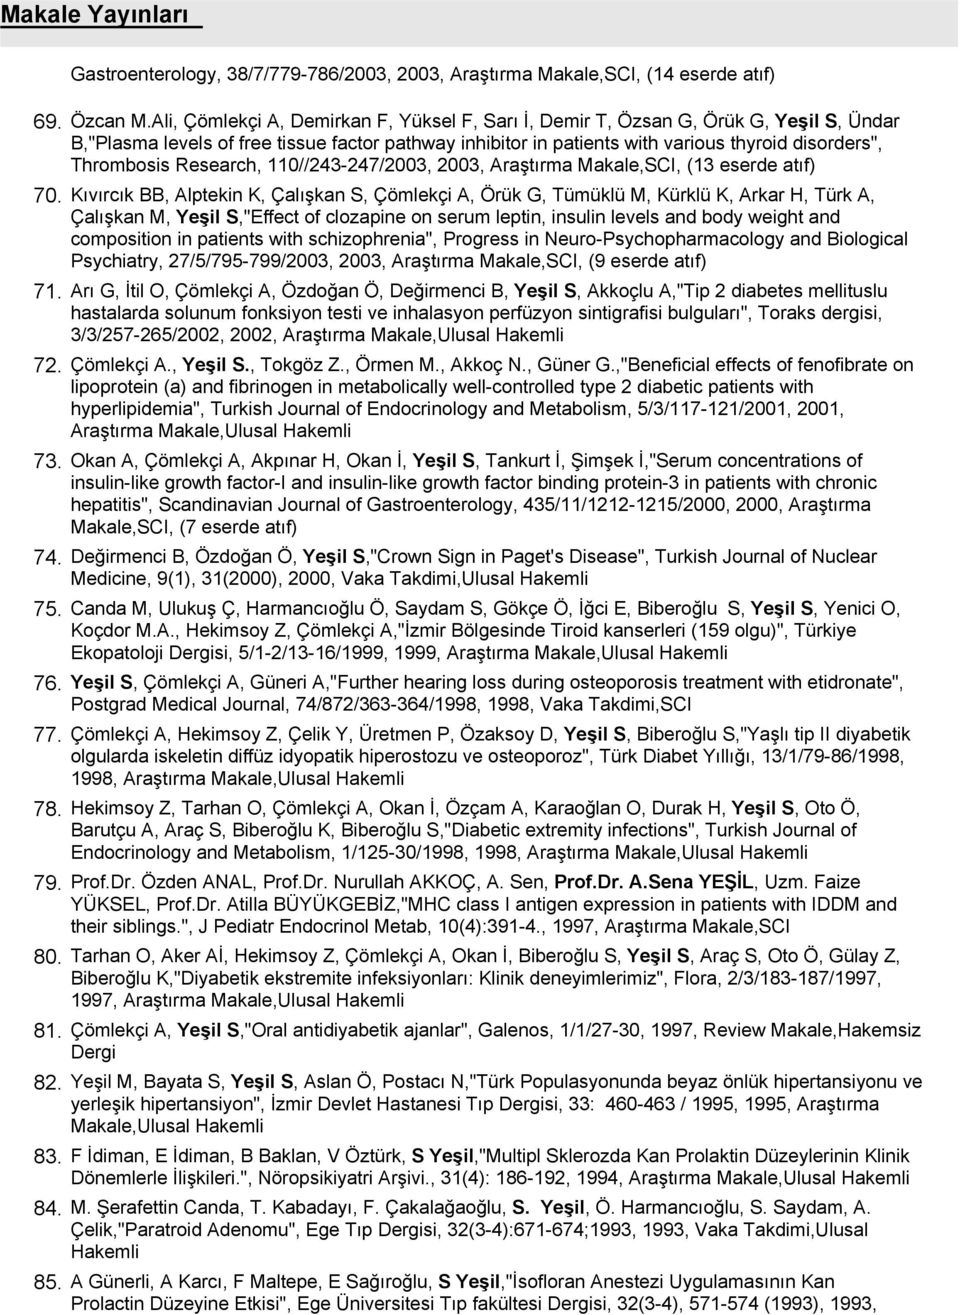 Thrombosis Research, 110//243-247/2003, 2003, Araştırma Makale,SCI, (13 eserde atıf) Kıvırcık BB, Alptekin K, Çalışkan S, Çömlekçi A, Örük G, Tümüklü M, Kürklü K, Arkar H, Türk A, Çalışkan M, Yeşil